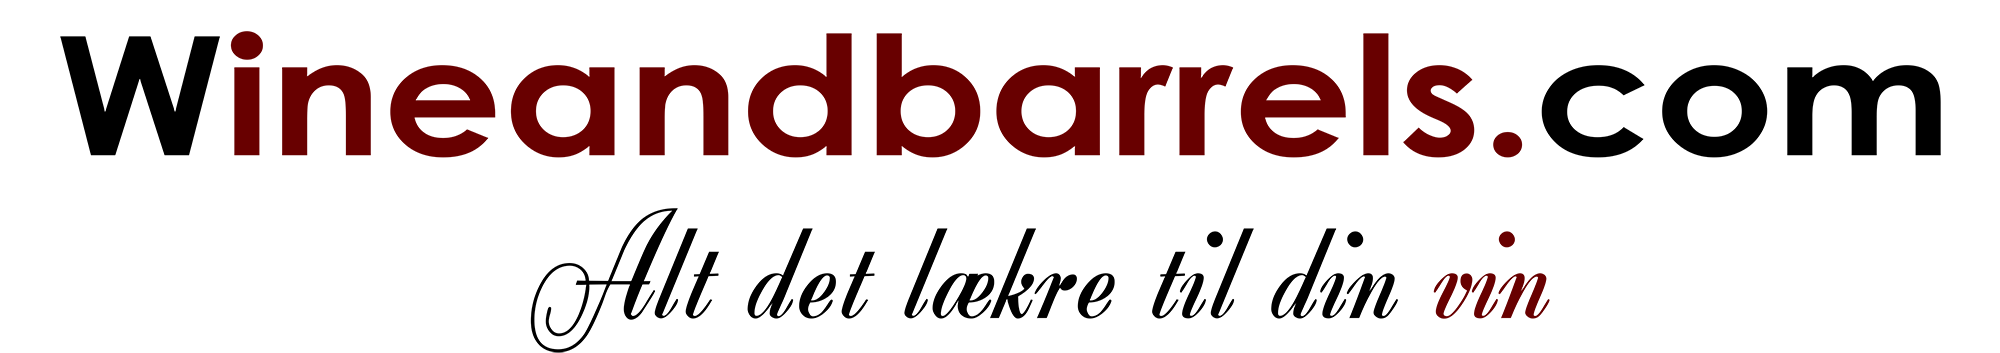 Wineandbarrels logo